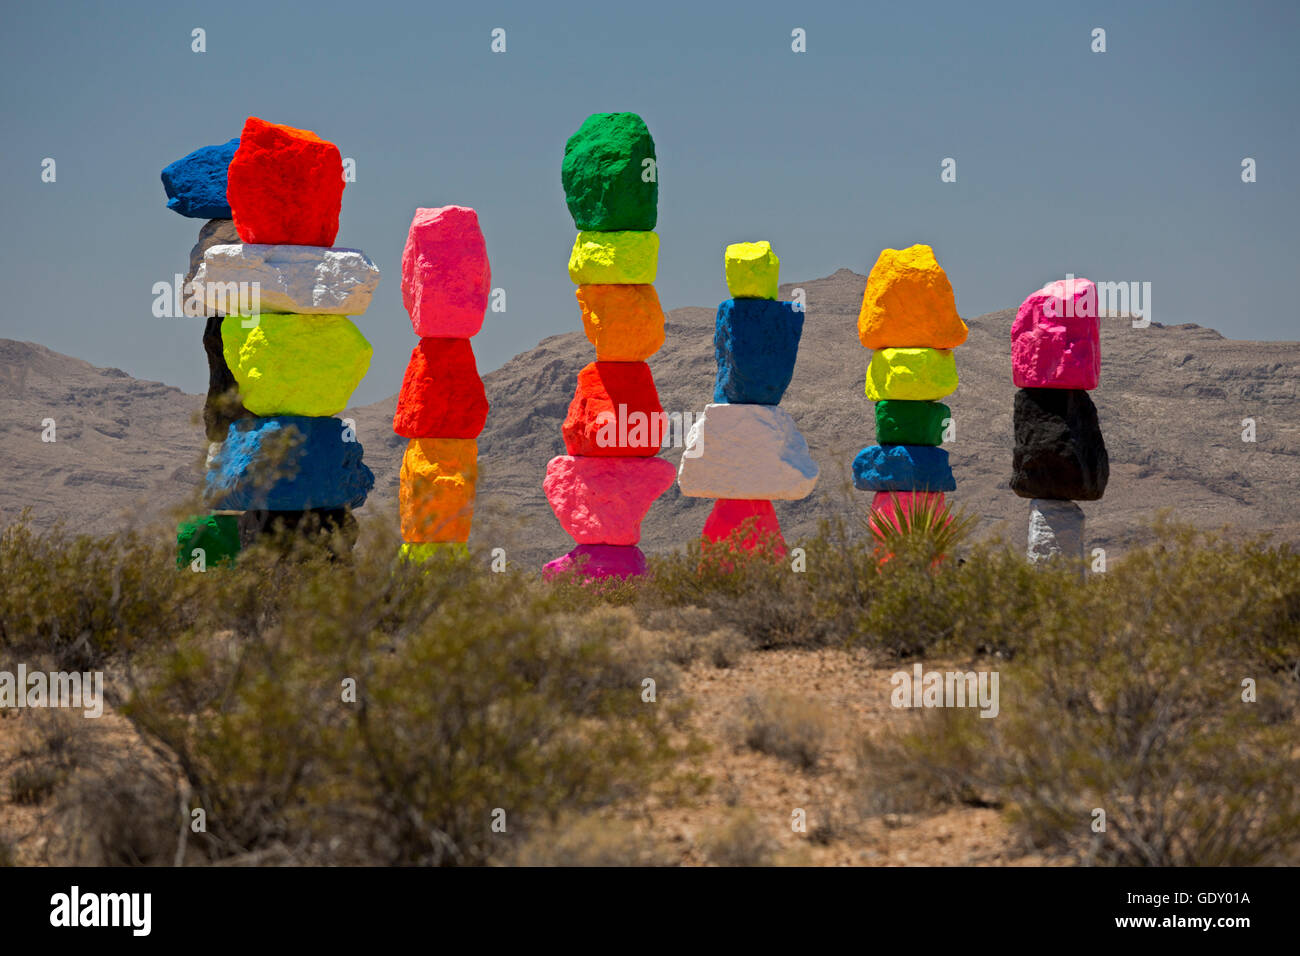 Jean, Nevada - Sette Montagne magiche, un arte pubblica installazione nel deserto vicino a Las Vegas, artista svizzero Ugo Rondinone. Foto Stock